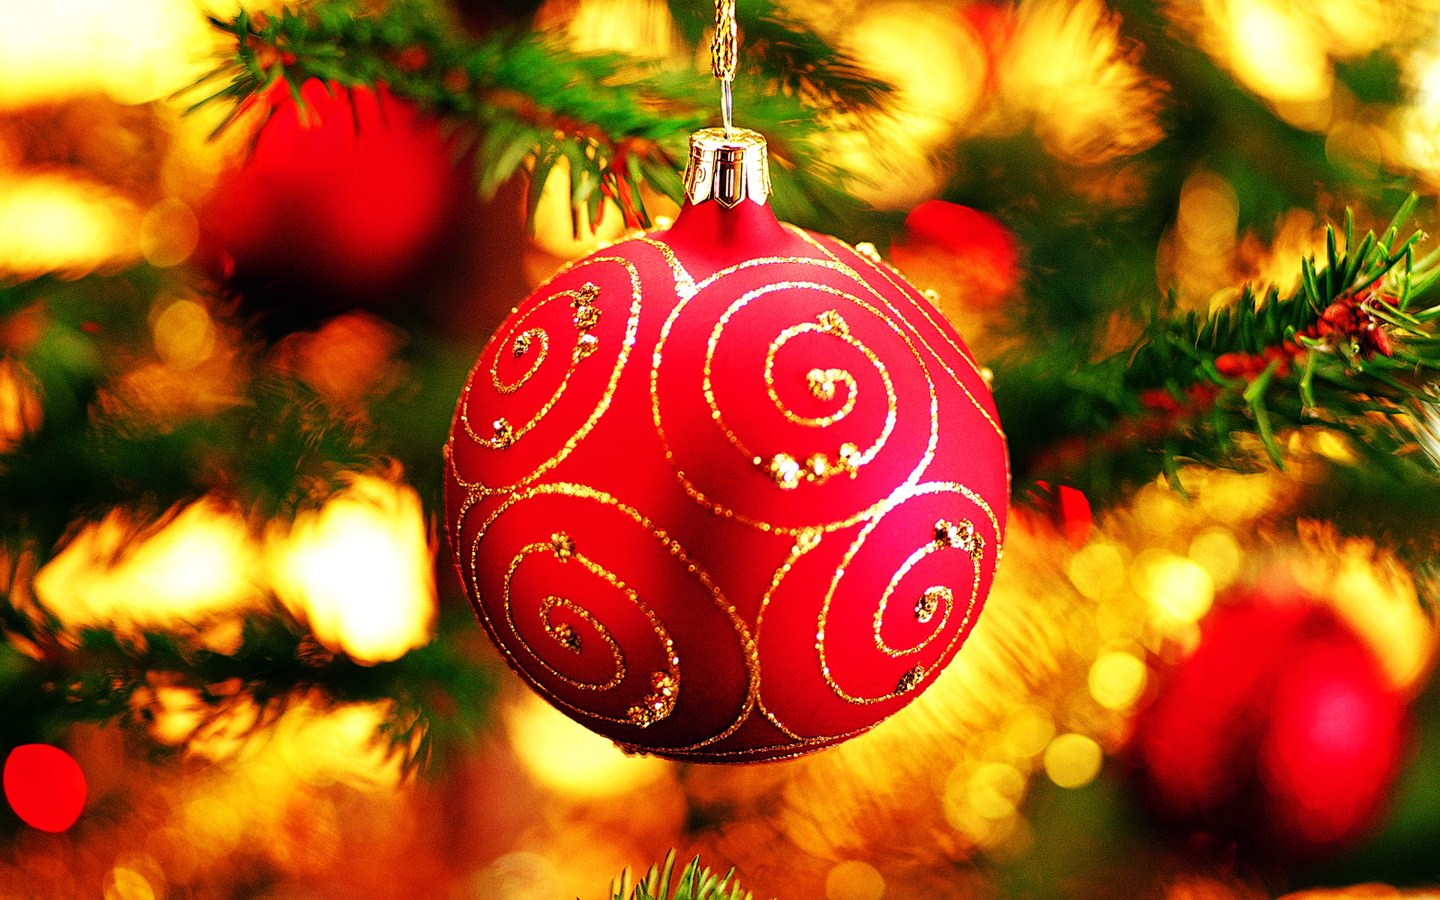 クリスマスの飾りの壁紙,クリスマスオーナメント,クリスマスの飾り,クリスマス,赤,クリスマスツリー